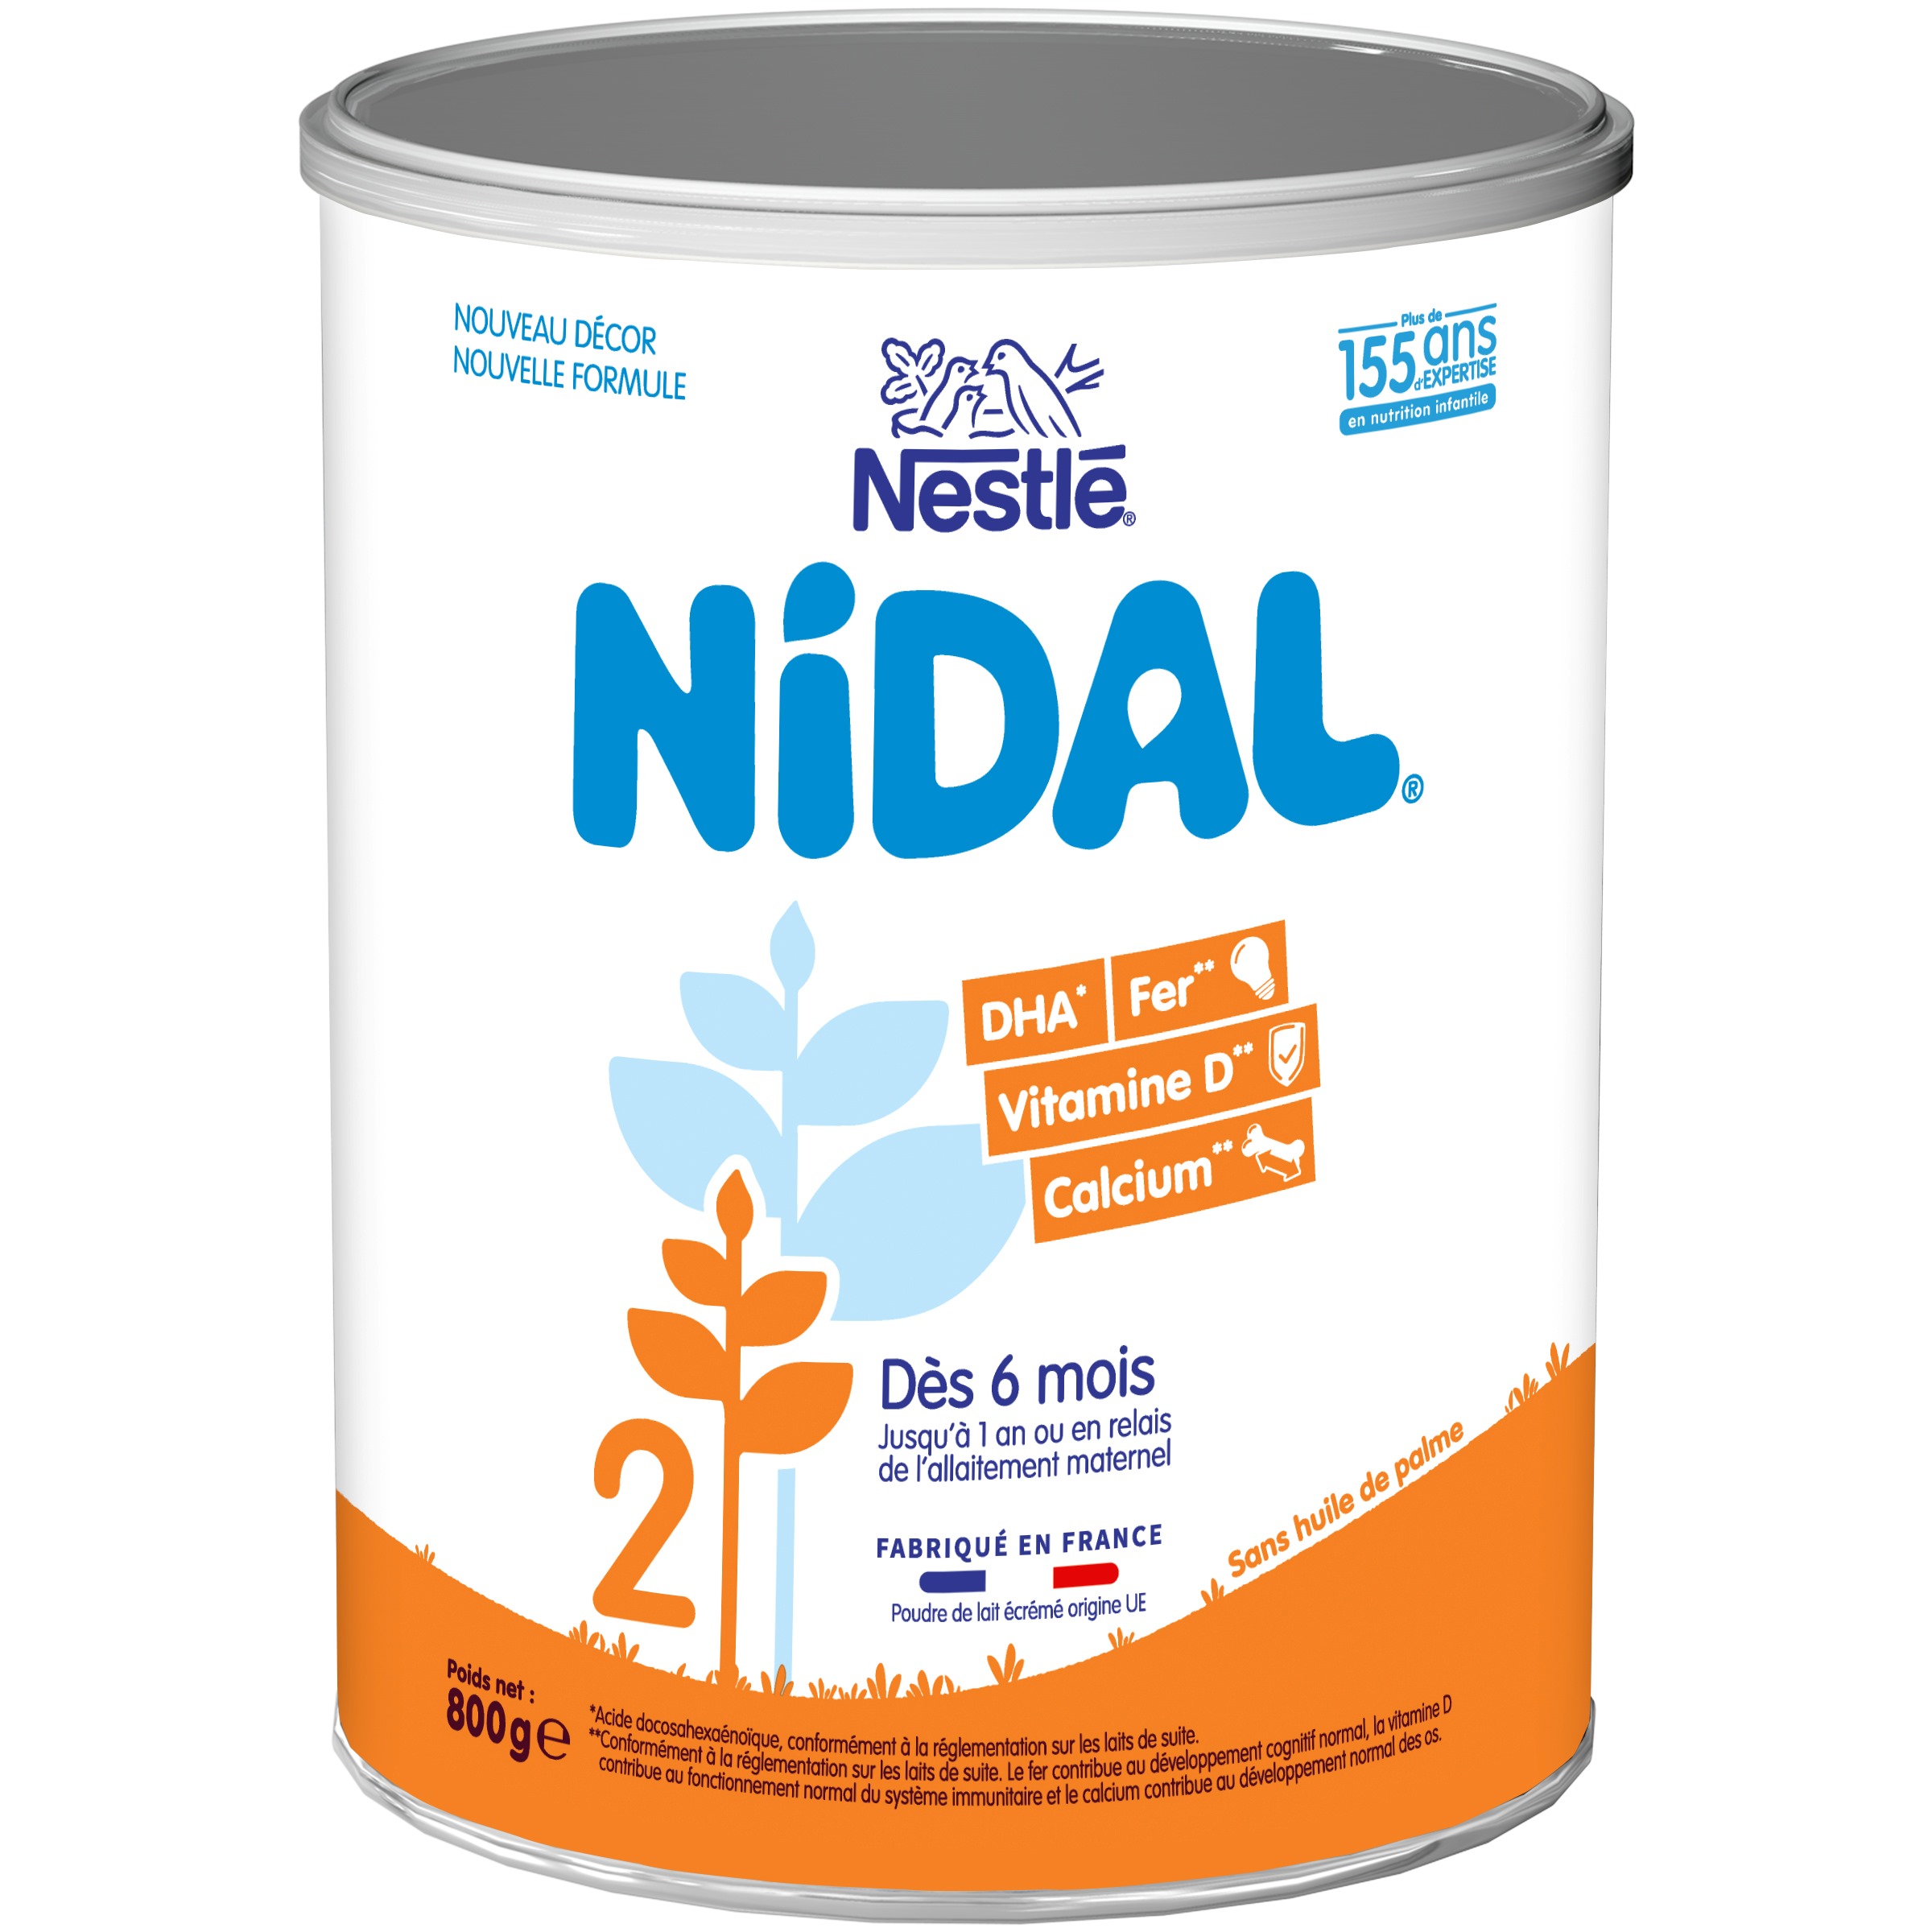 Test de Nestlé Nidal 2 